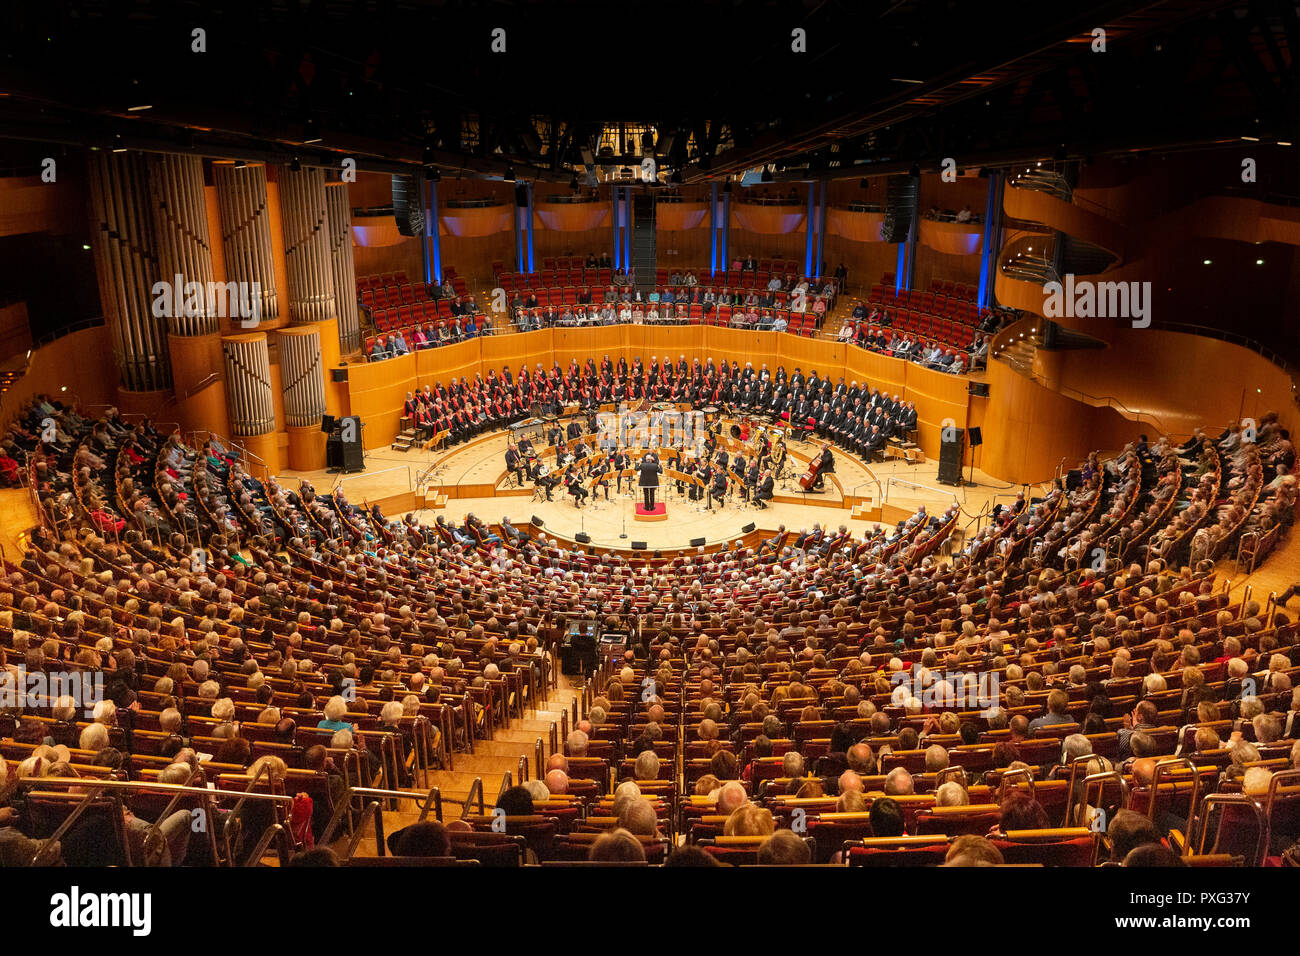 Galakonzert der Kölner Philharmonie Köln, 21.10.2018 Foto Stock